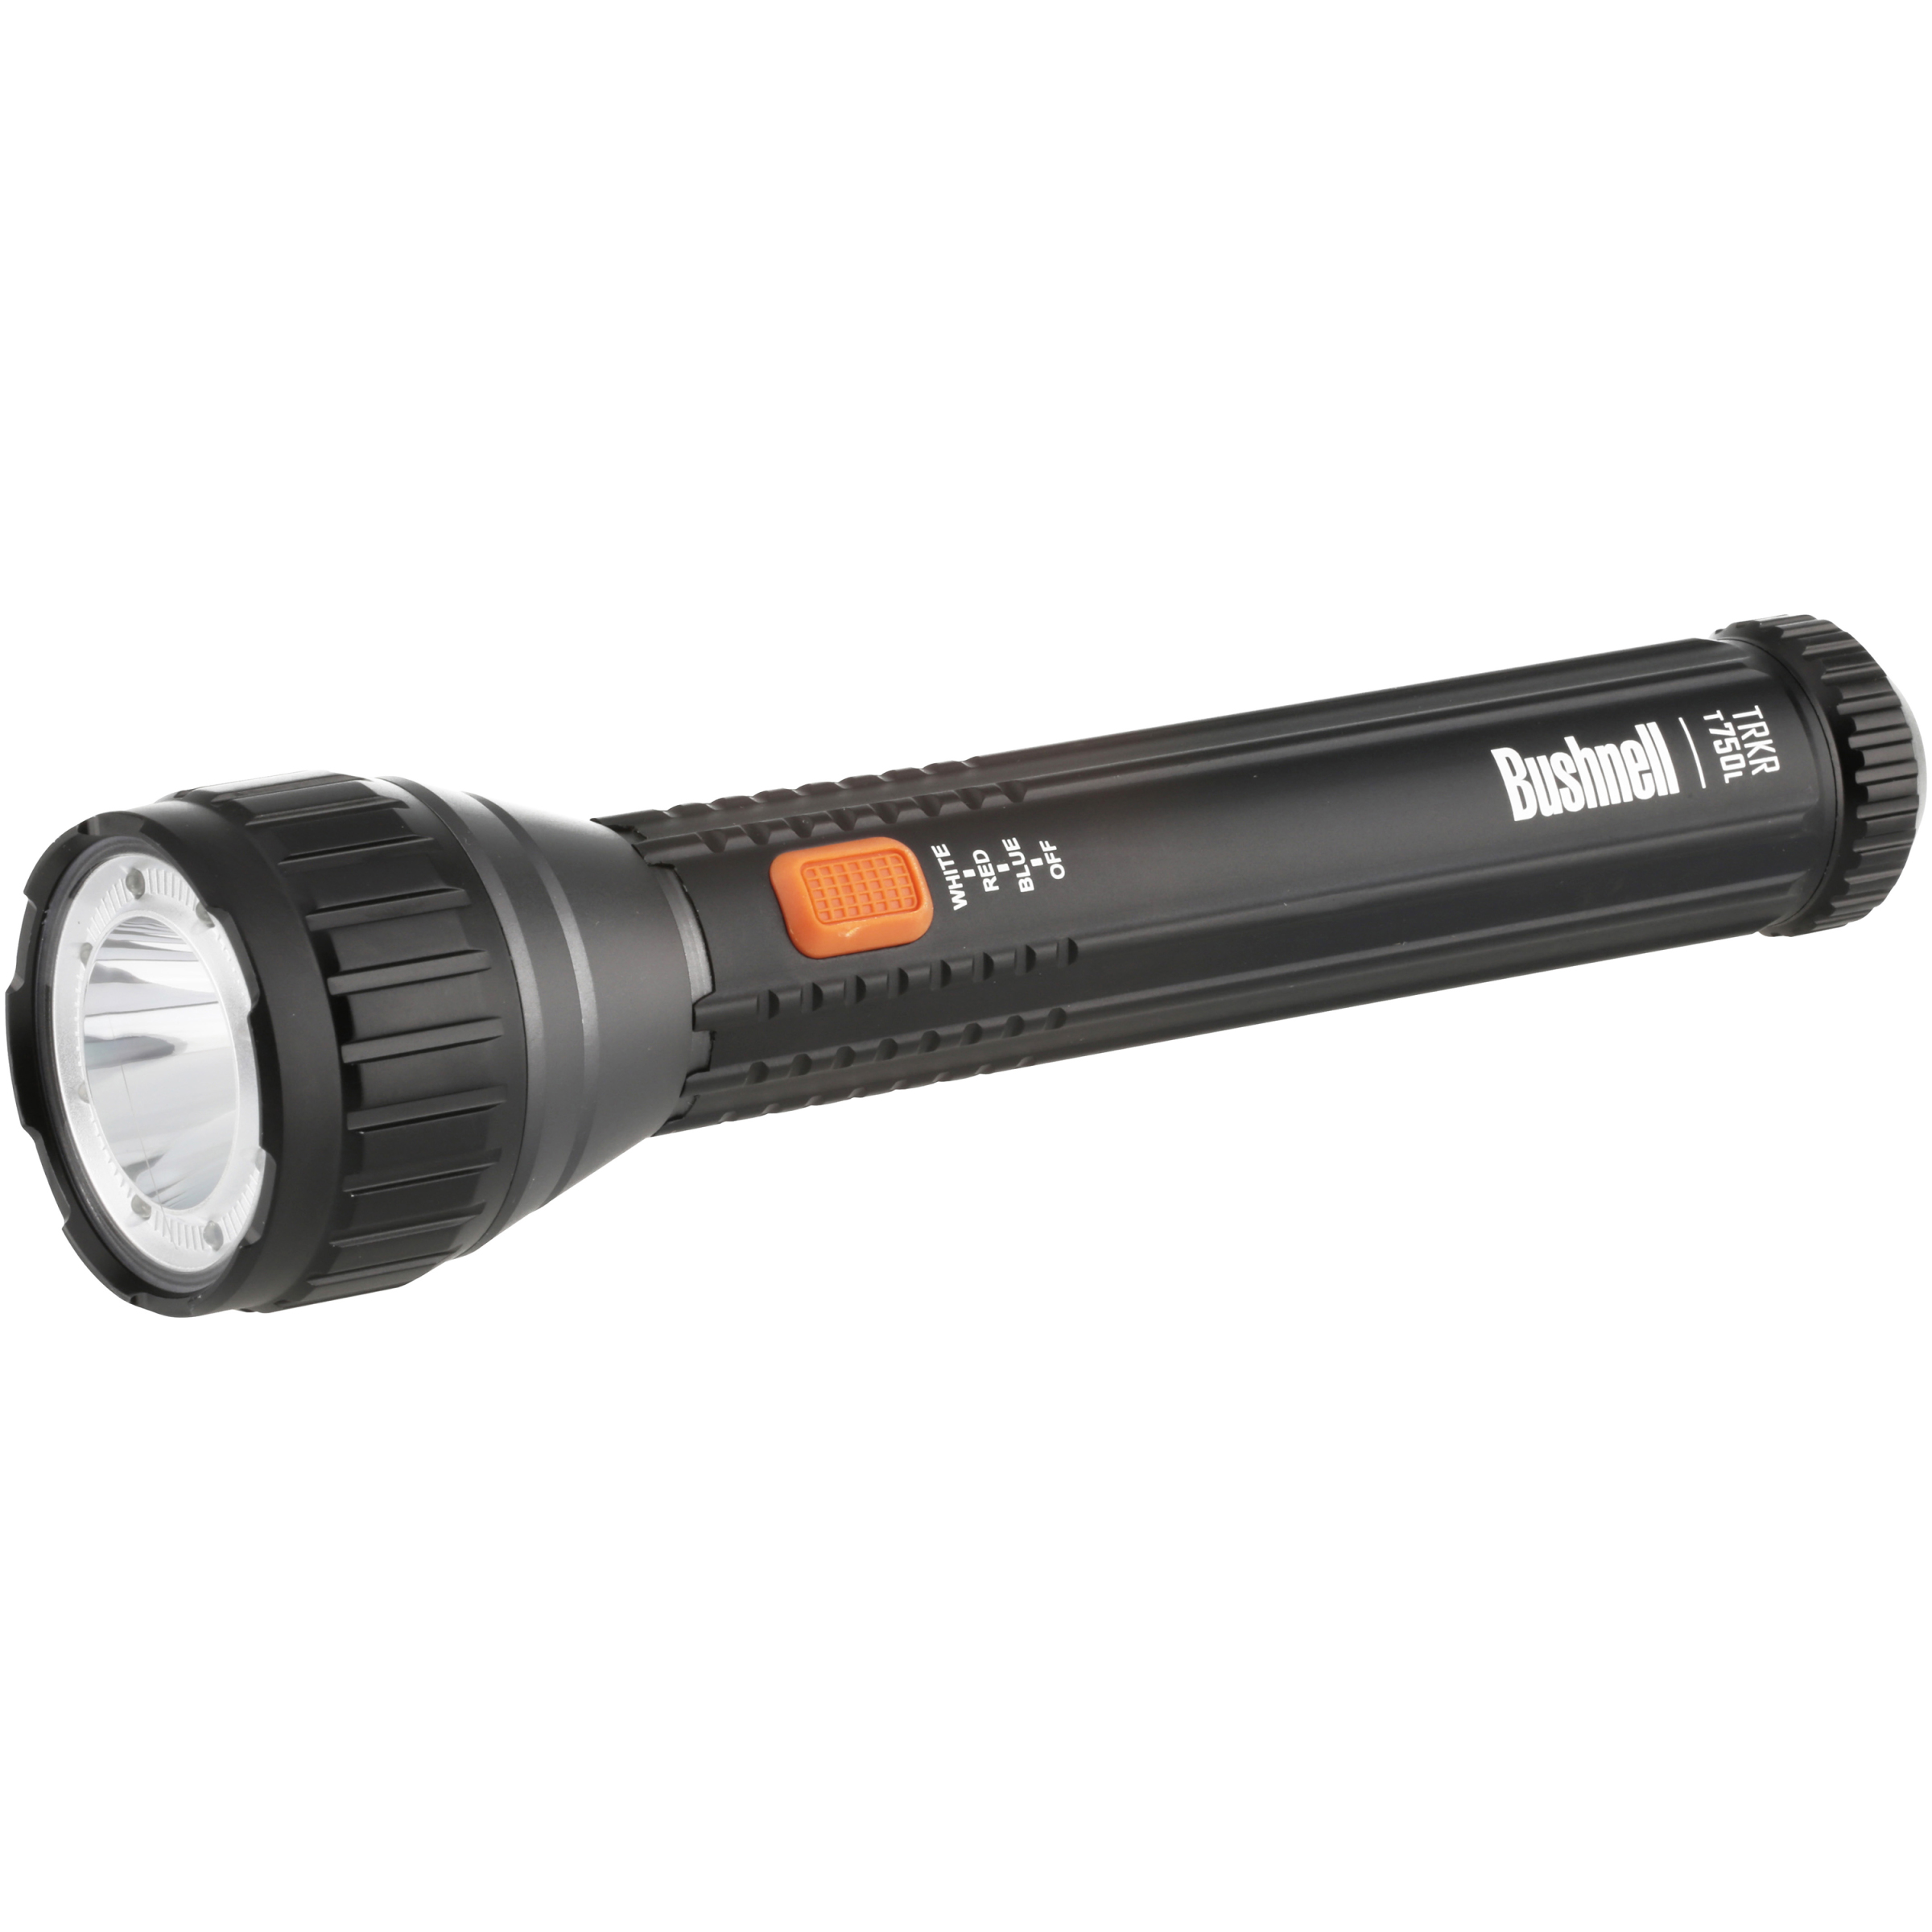 Bushnell LED 750 Lumens Flashlight - image 1 of 13